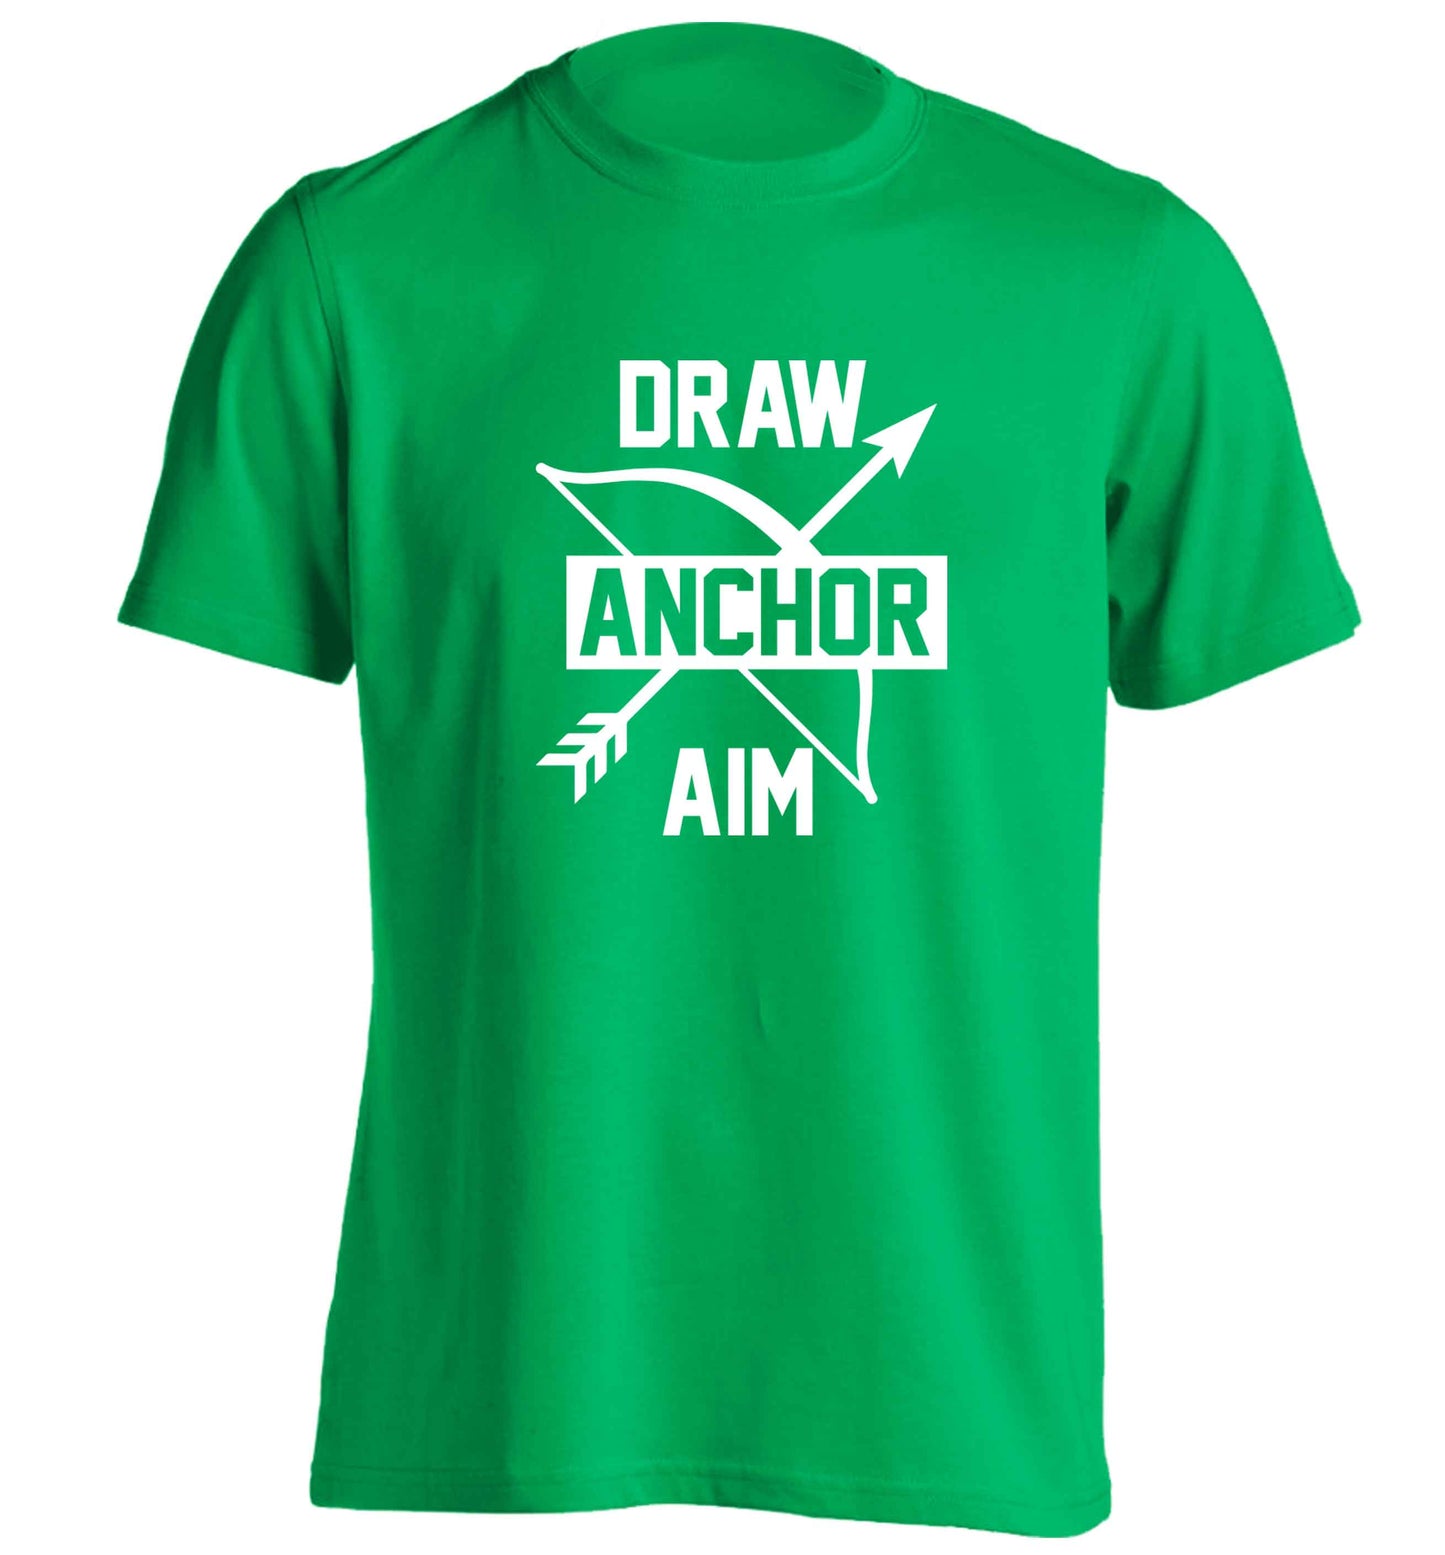 Draw anchor aim adults unisex green Tshirt 2XL